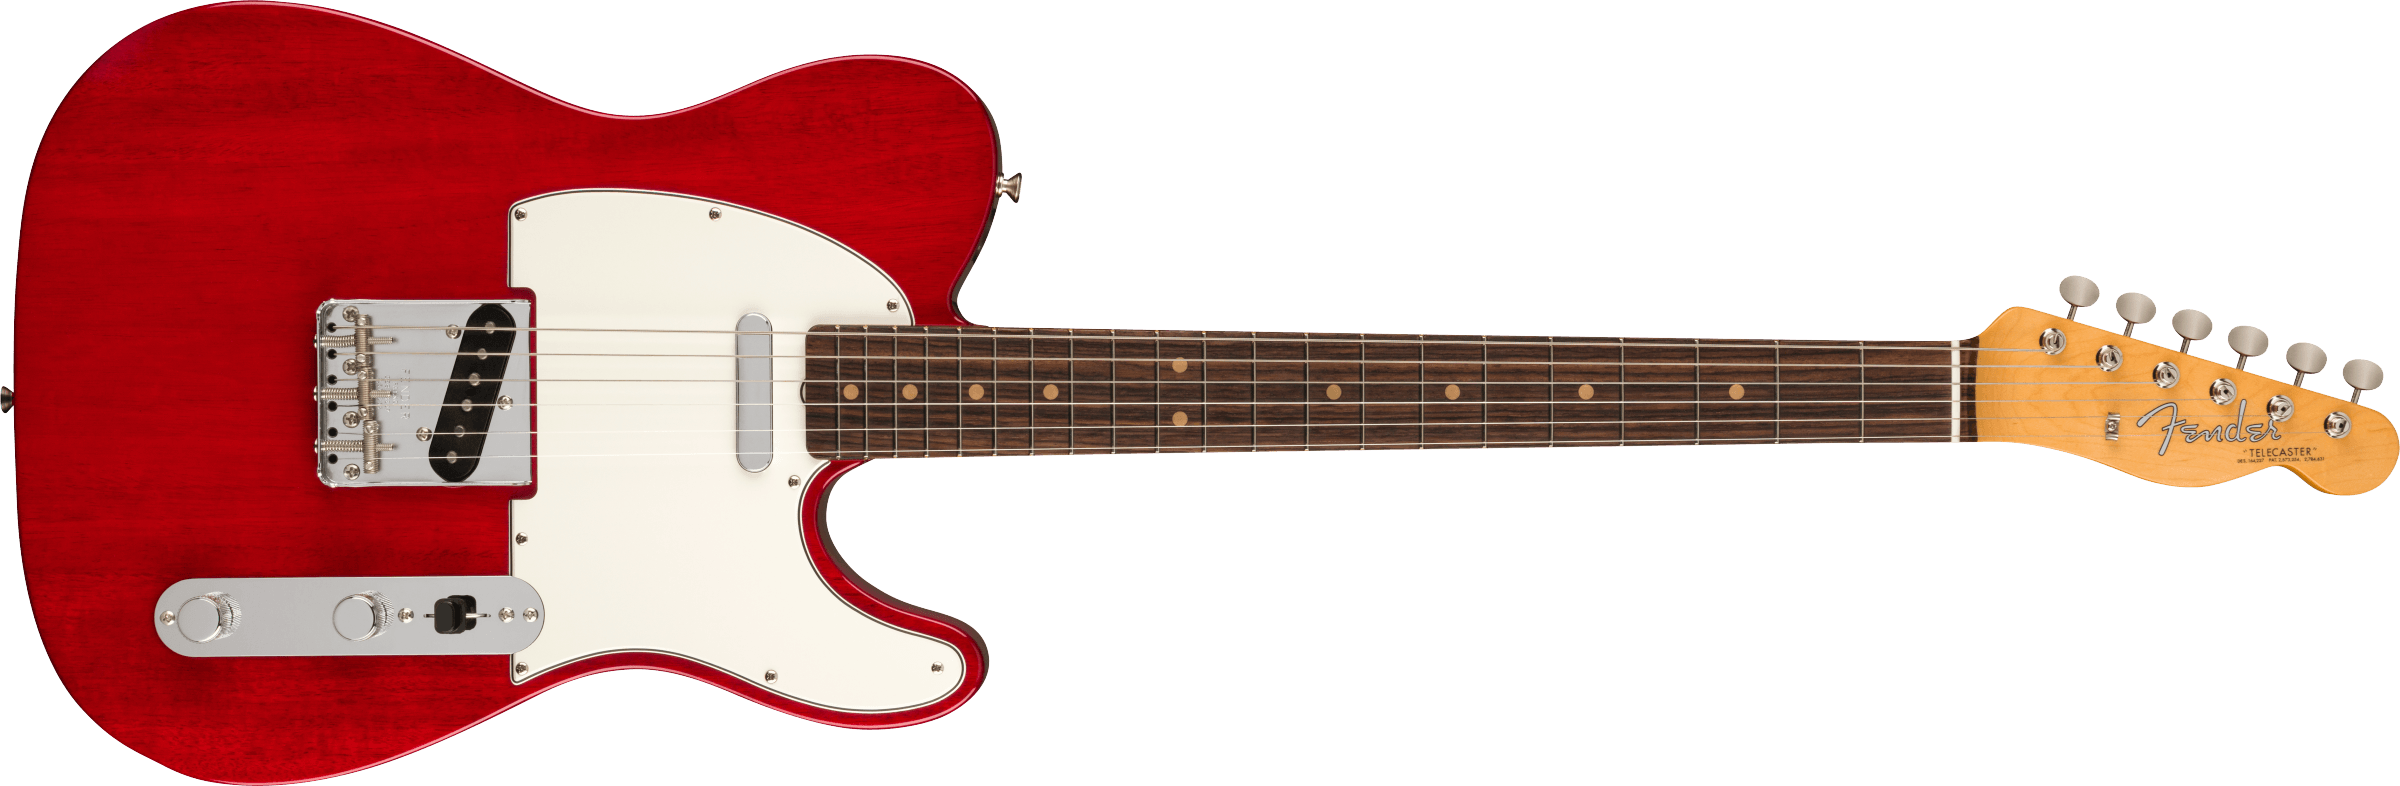 Fender American Vintage II 1963 Telecaster®, Rosewood Fingerboard, Crimson Red Transparent